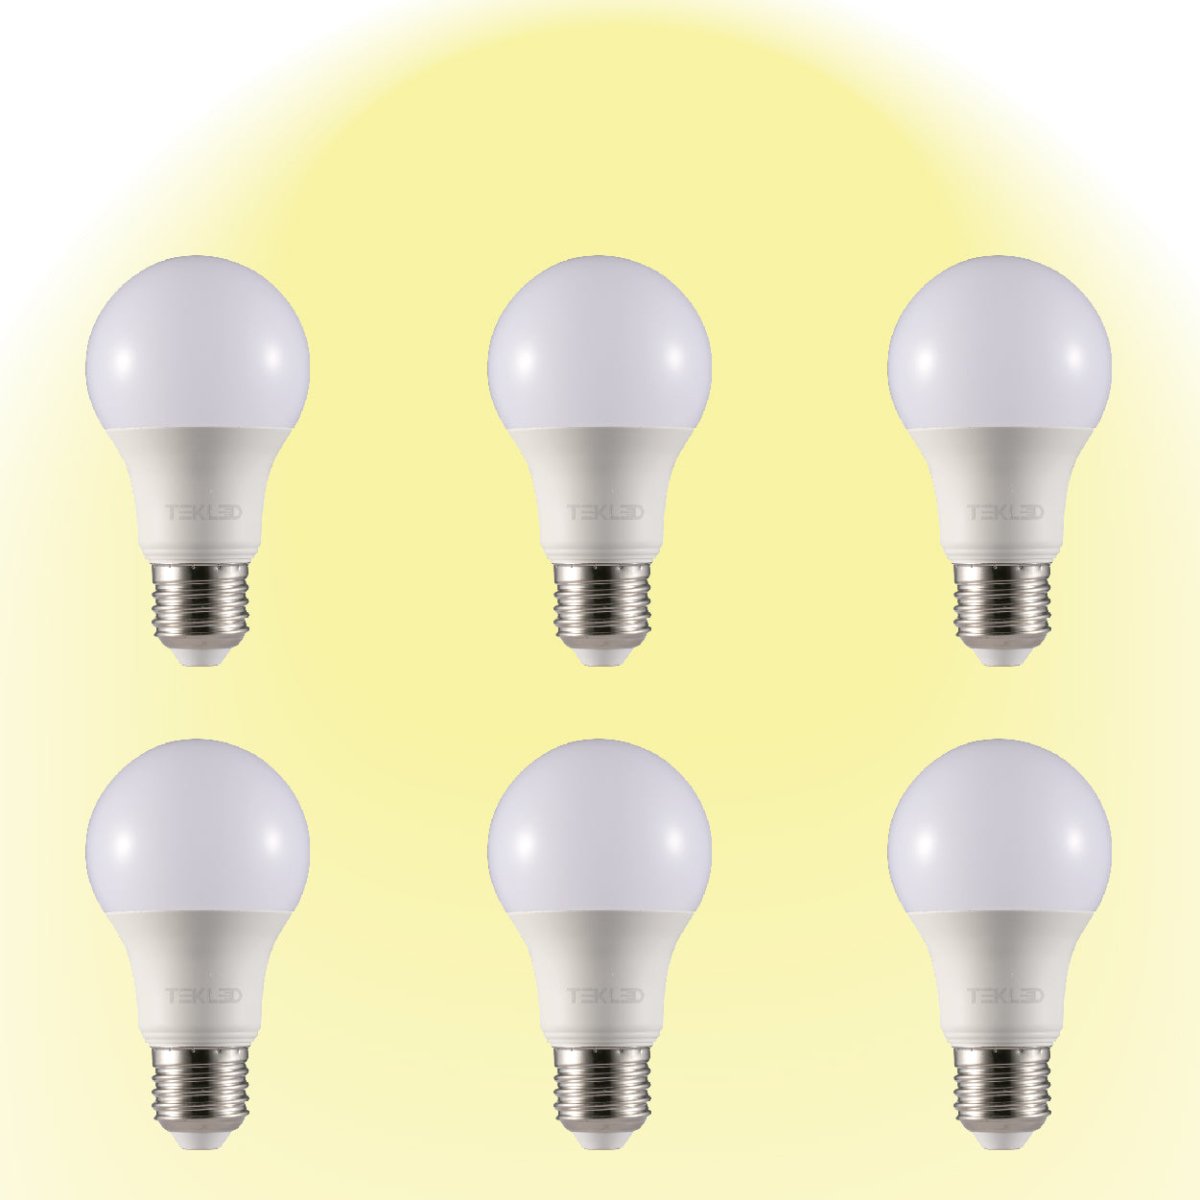 Virgo LED GLS Bulb A60 E27 Edison Screw 2700K Warm White 7 W Pack of 6 527-15640